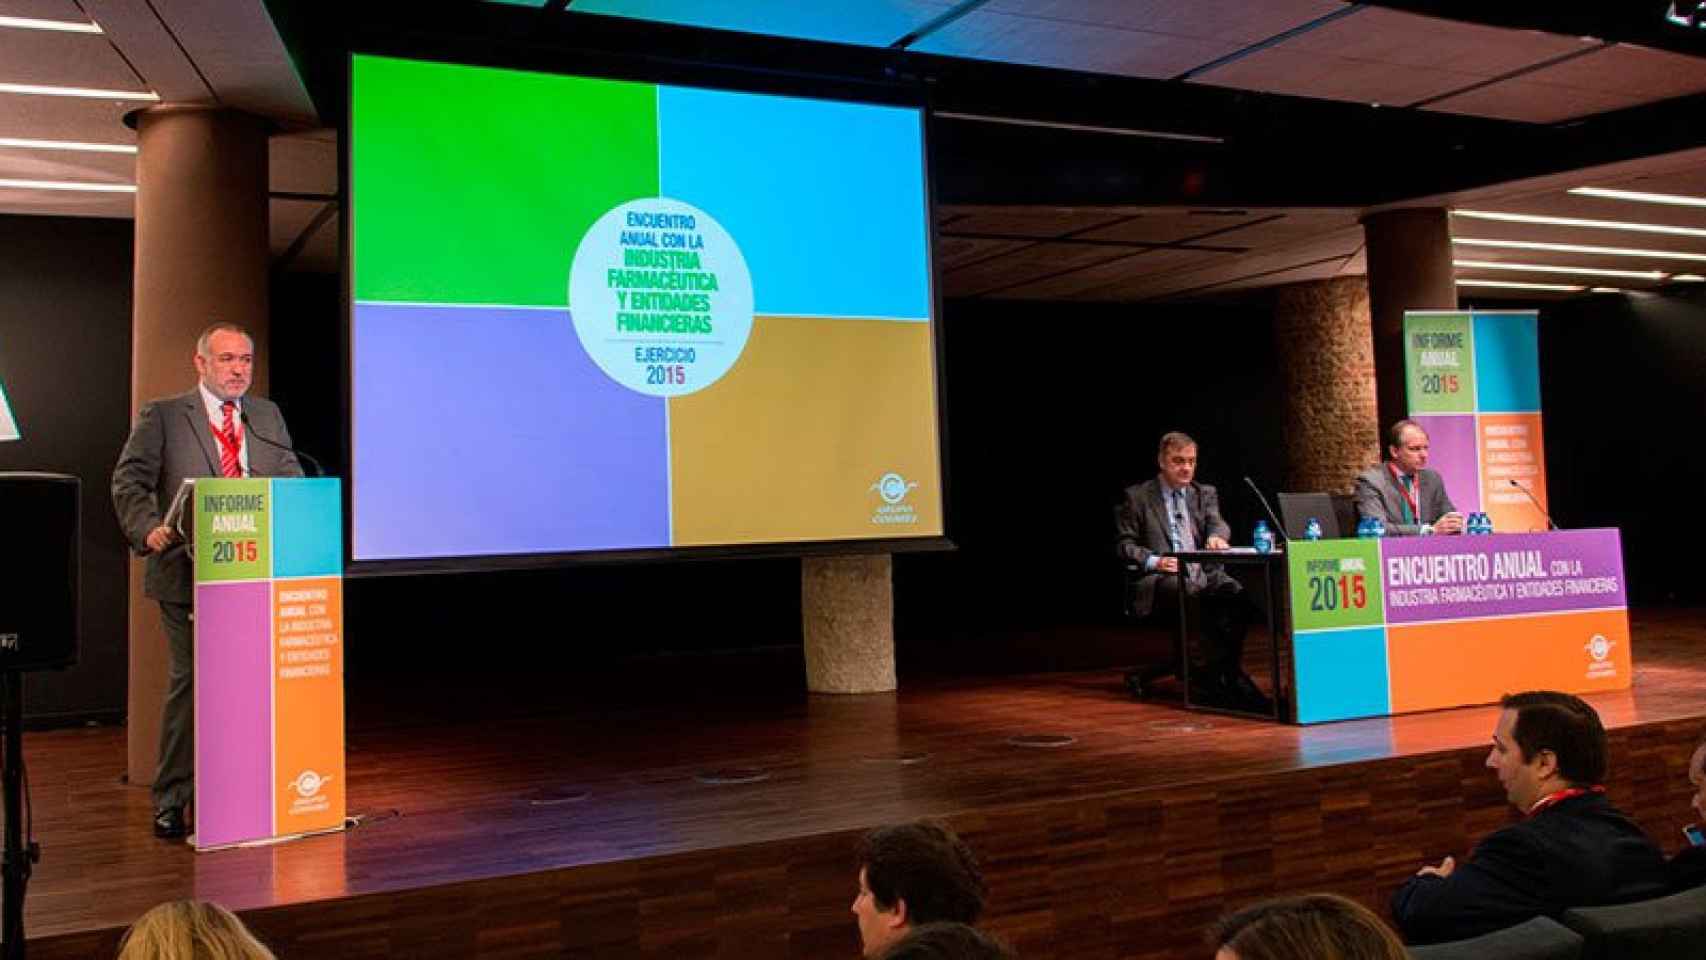 Acto de presentación de los resultados del Grupo Cofares en Barcelona.